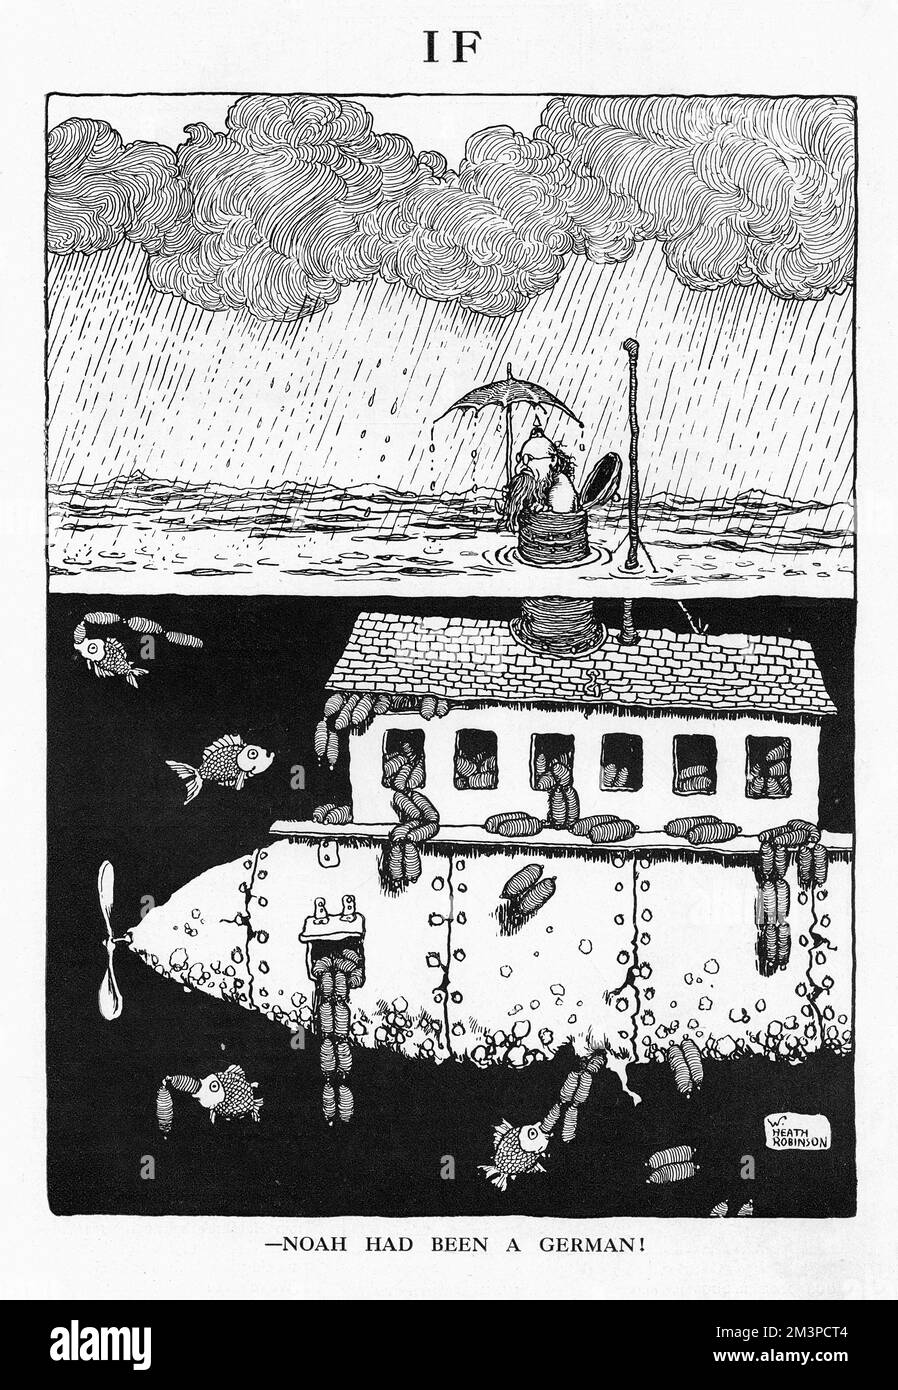 'IF - Noah había sido un alemán' Una caricatura de William Heath Robinson que apareció en un número de The Bystander sobre el tema de 'If'. Heath Robinson imagina el arca de Noé como un U-Boat alemán, rebosante de salchichas Fecha: 1917 Foto de stock